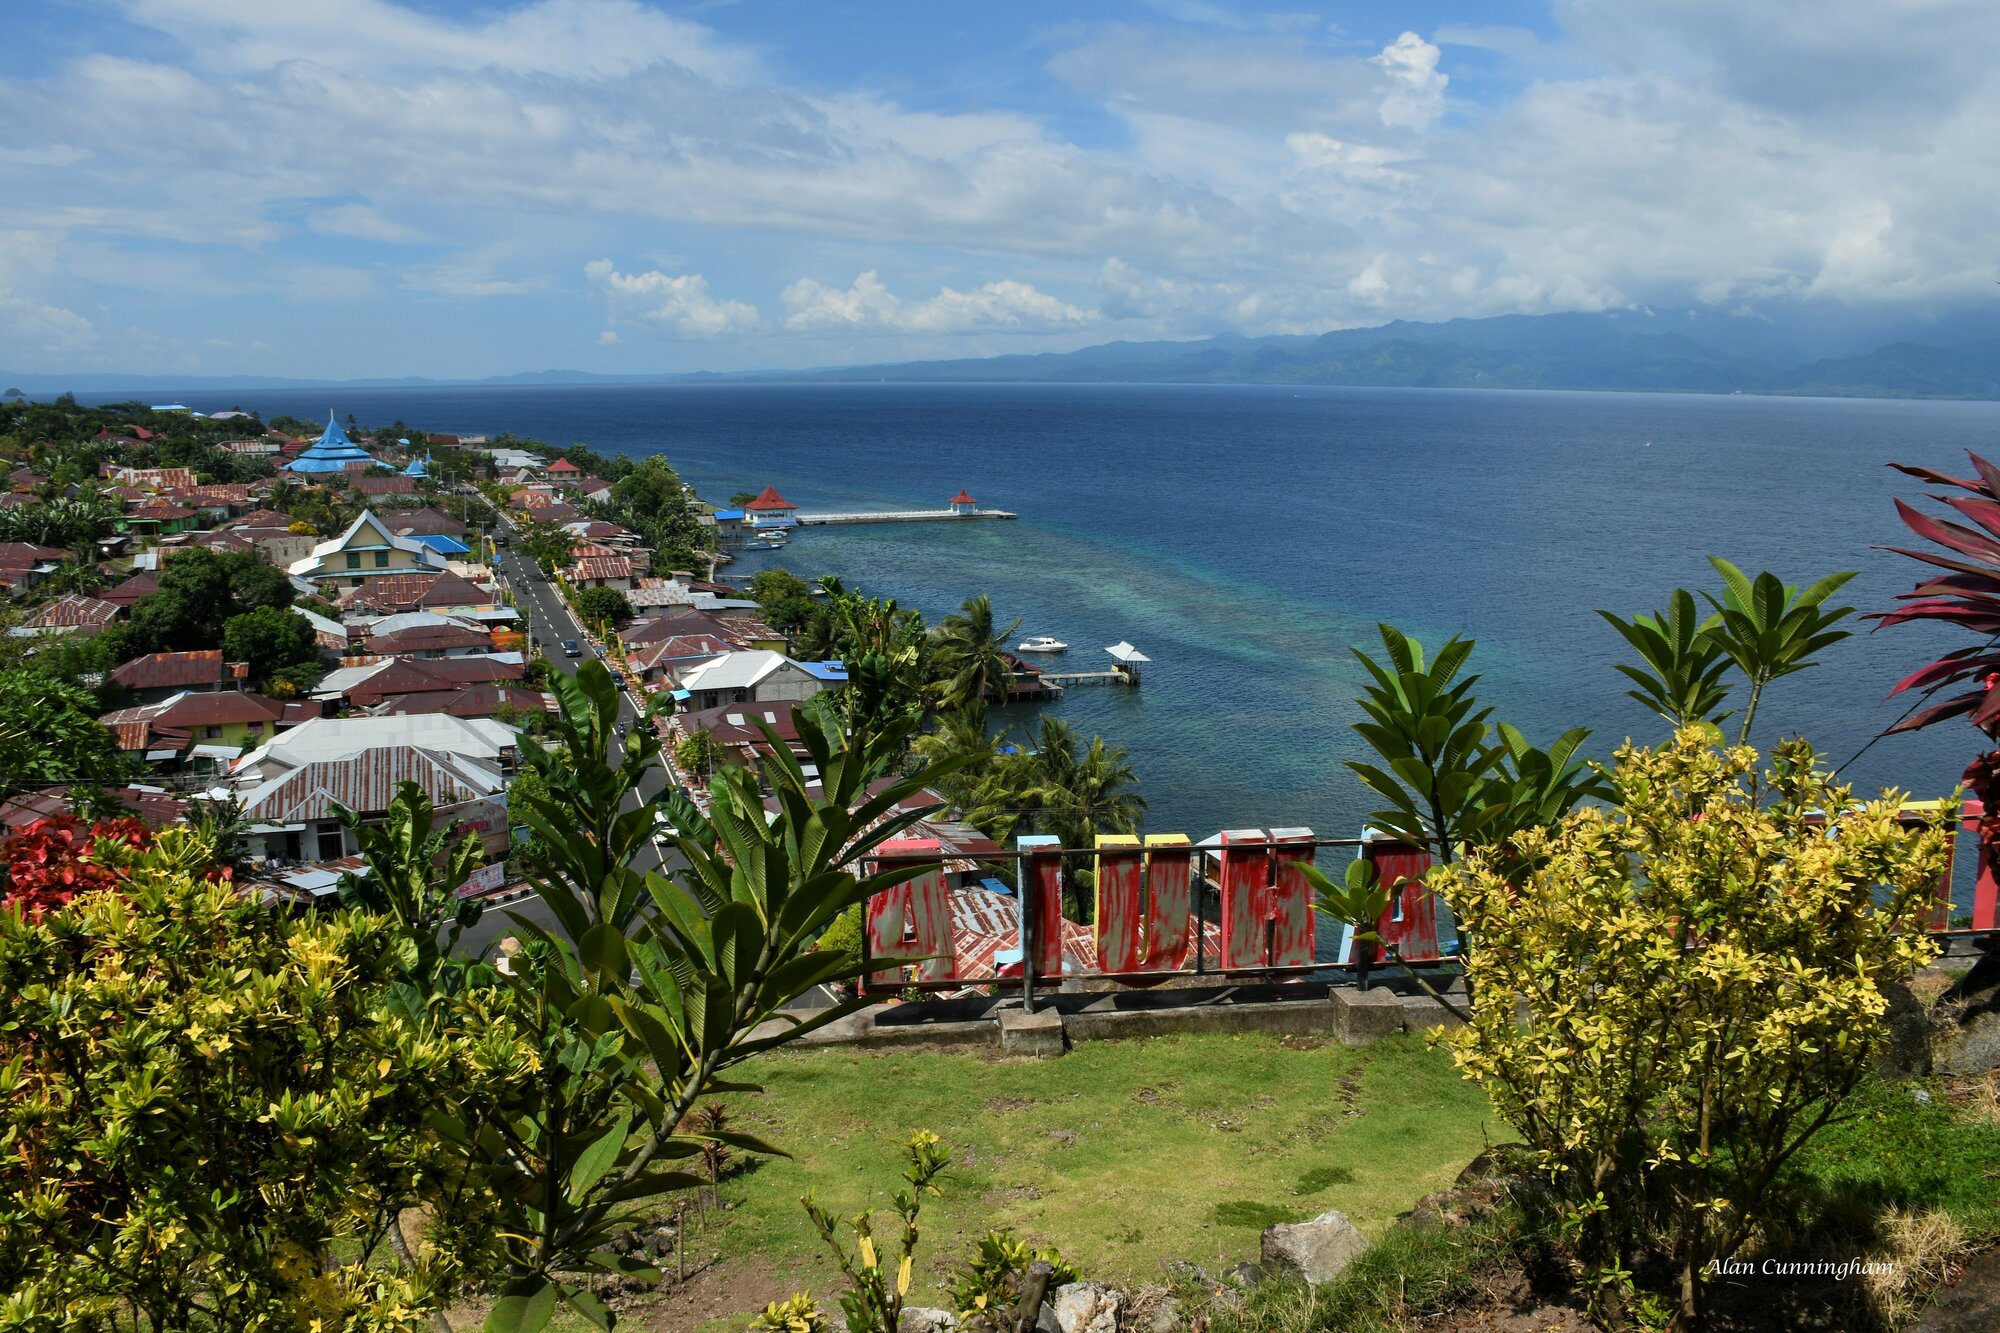 Molukken - Gewürzinseln: Ausblick Inselhauptstadt Tidore